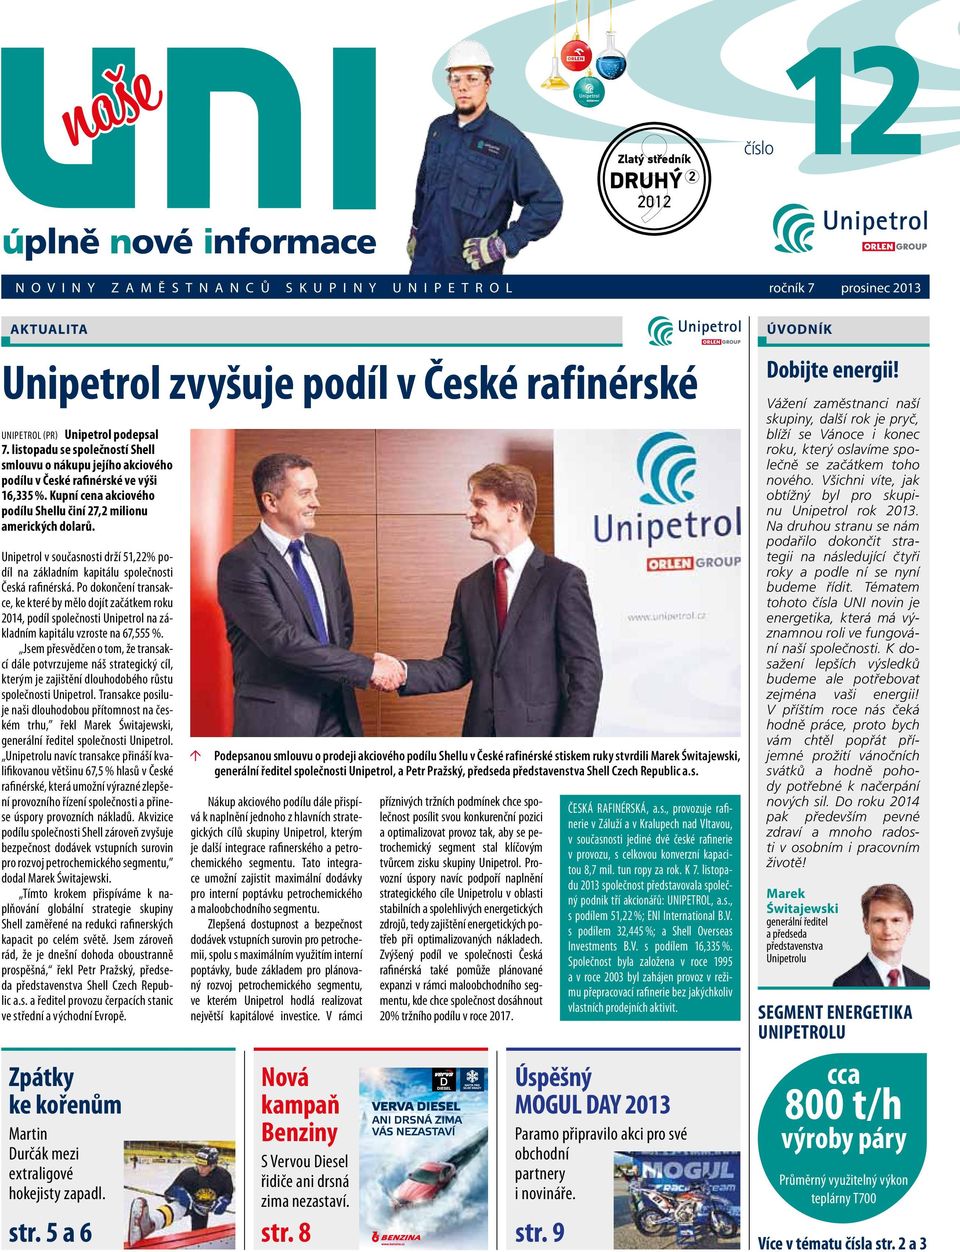 rafinérské Unipetrol (PR) Unipetrol podepsal 7. listopadu se společností Shell smlouvu o nákupu jejího akciového podílu v České rafinérské ve výši 16,335 %.